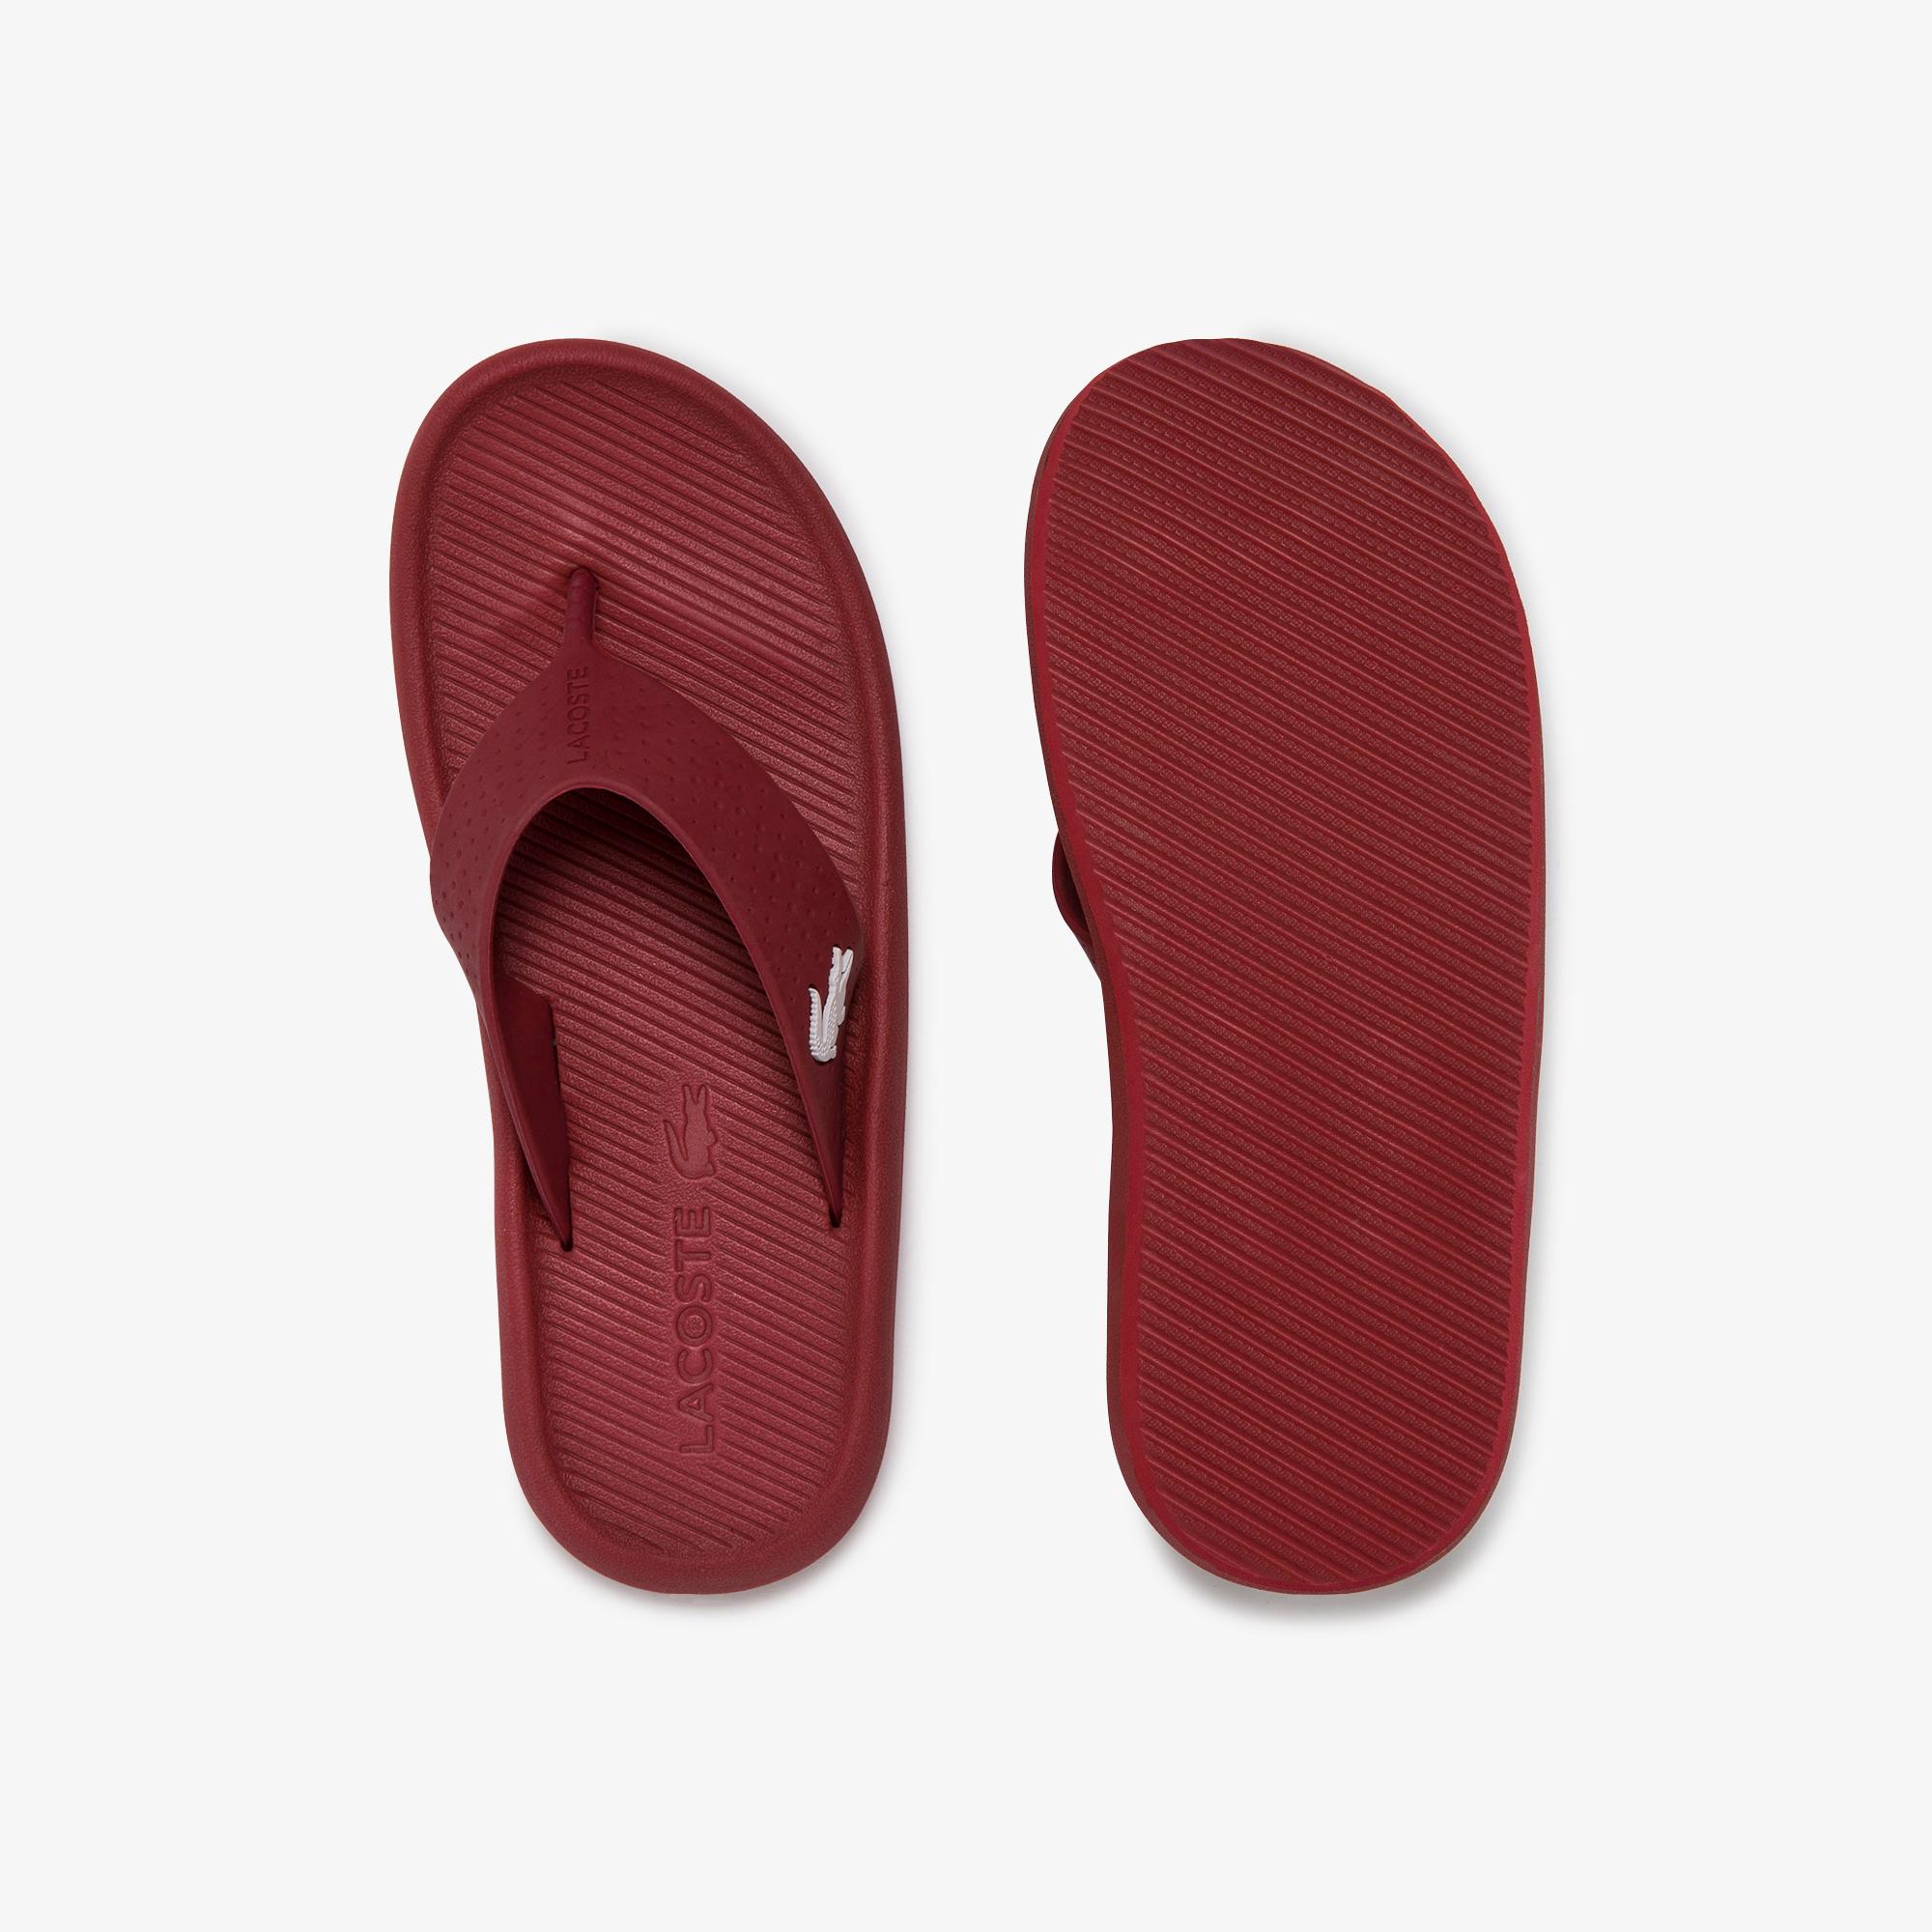 Lacoste Croco Sandal 120 1 Women's Shoes